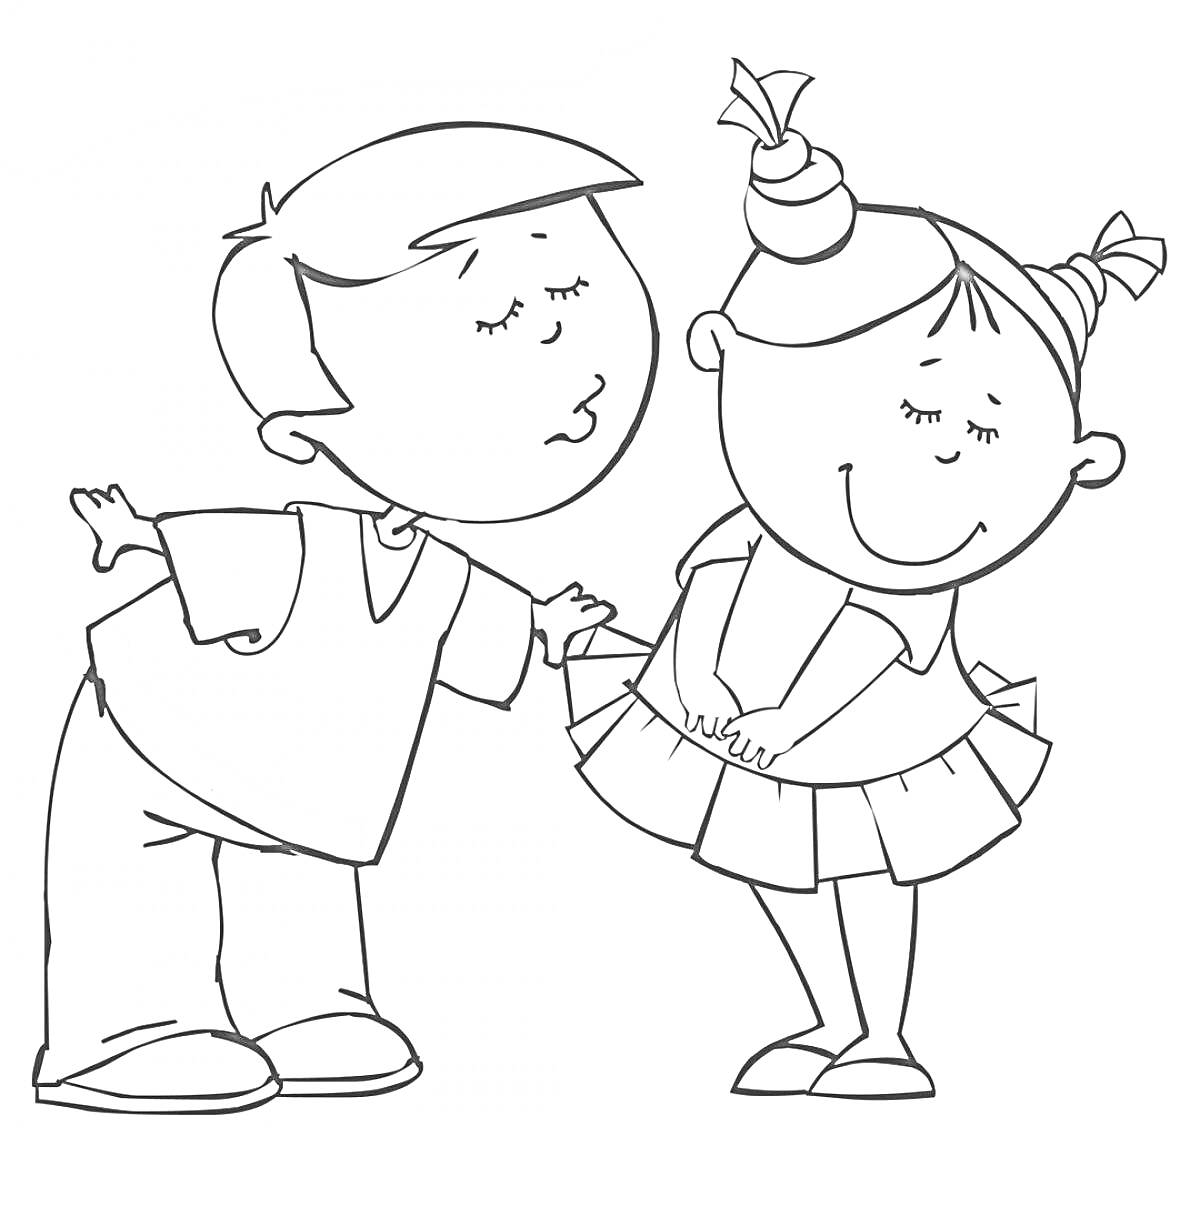 Мальчик и девочка с закрытыми глазами, мальчик наклоняется для поцелуя девочки в платье с хвостиками